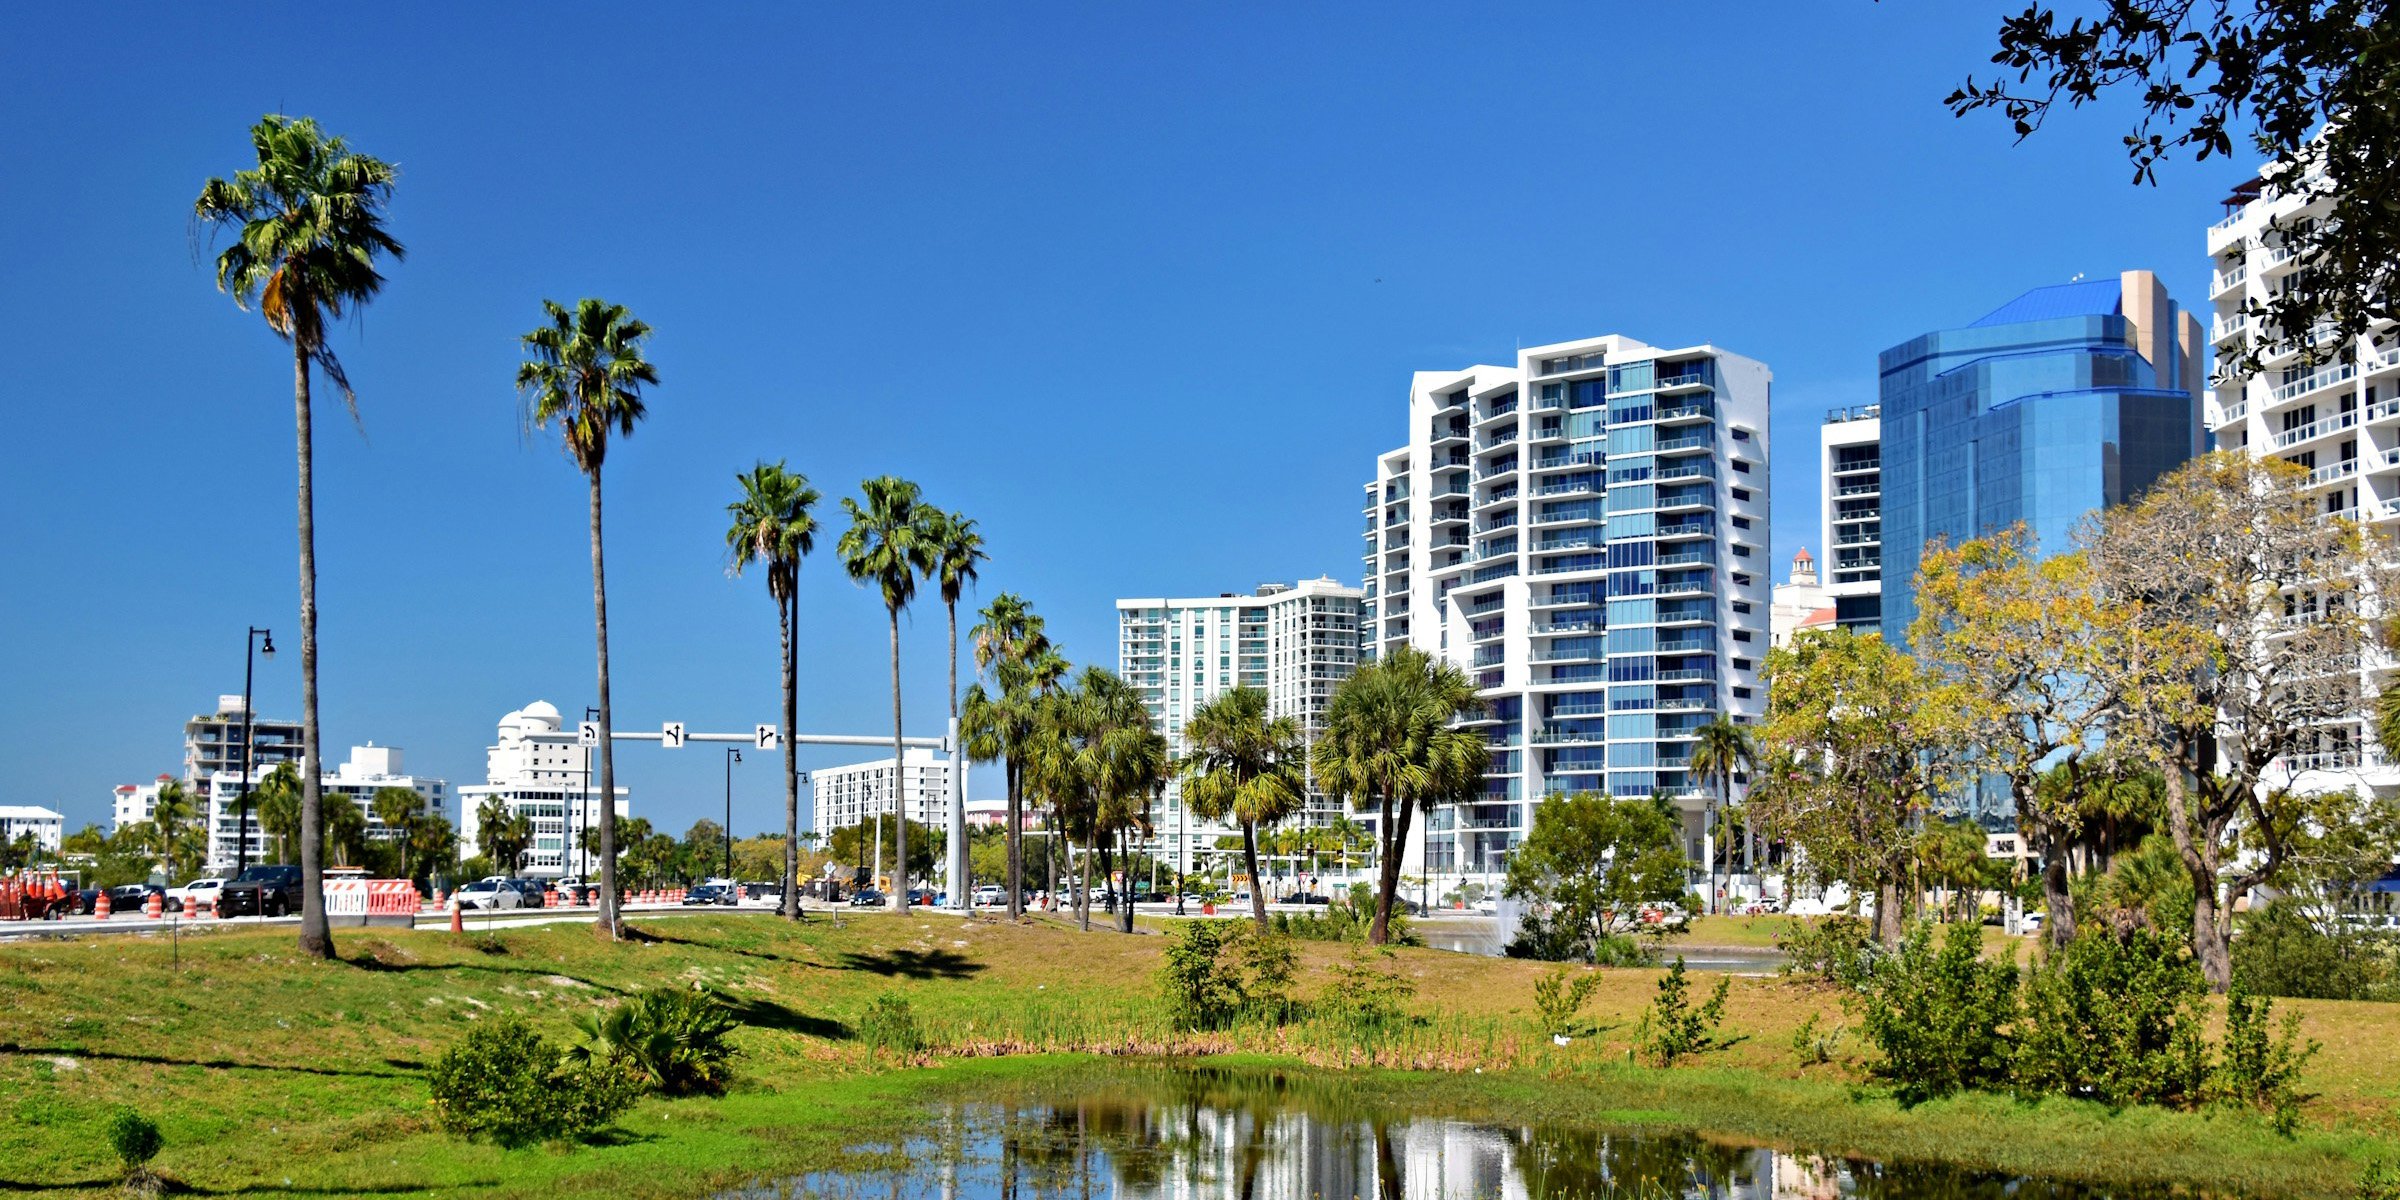 10 Interesting Facts About Sarasota, Florida